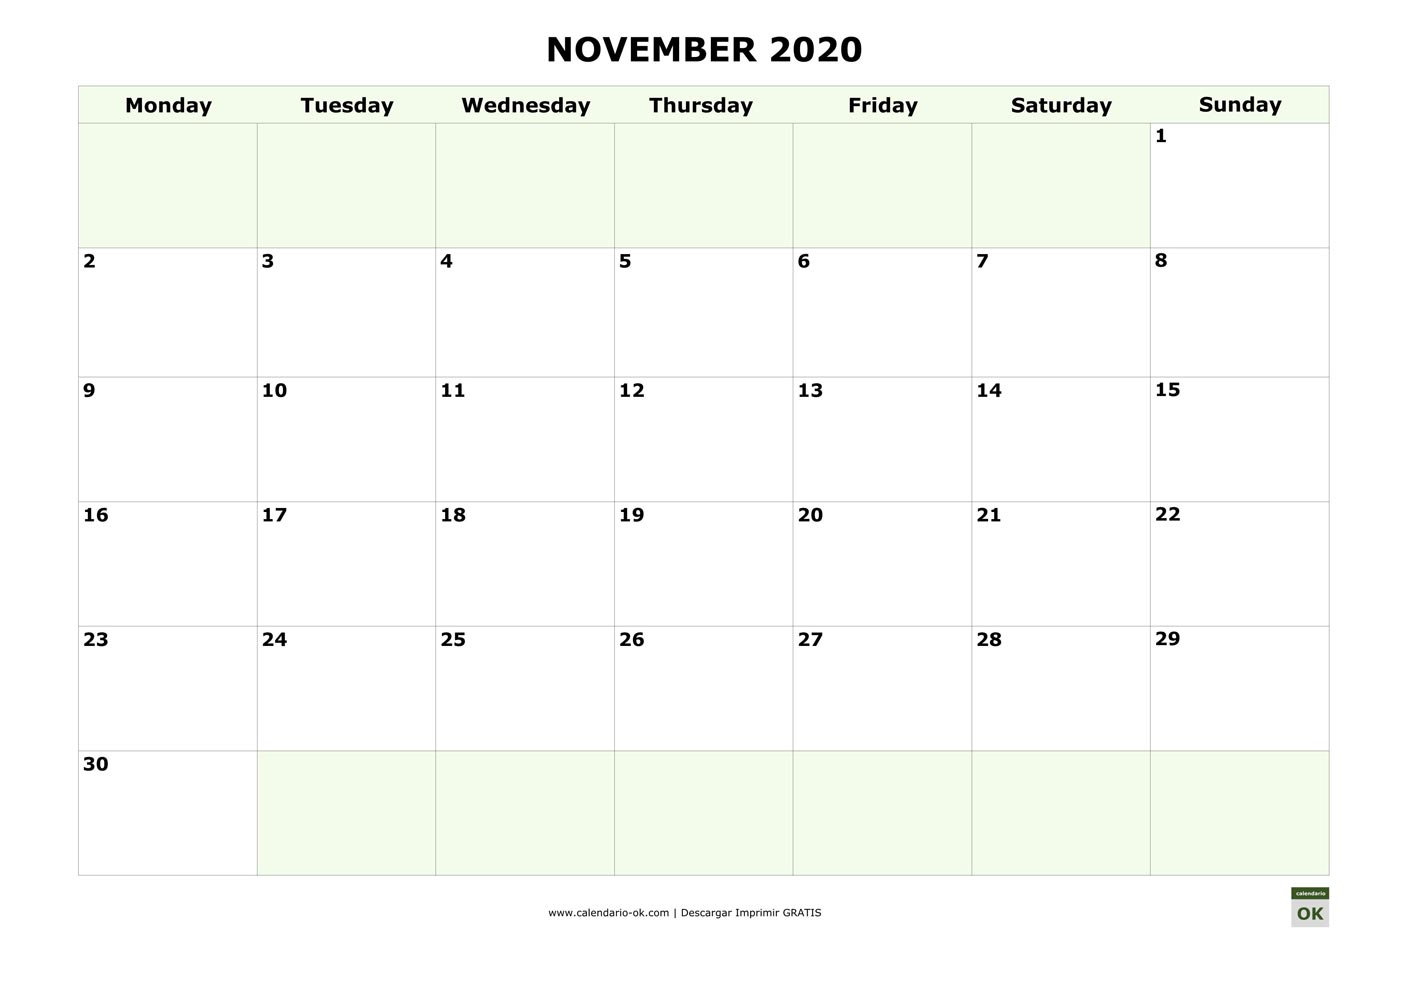 NOVIEMBRE 2020 calendario en INGLES